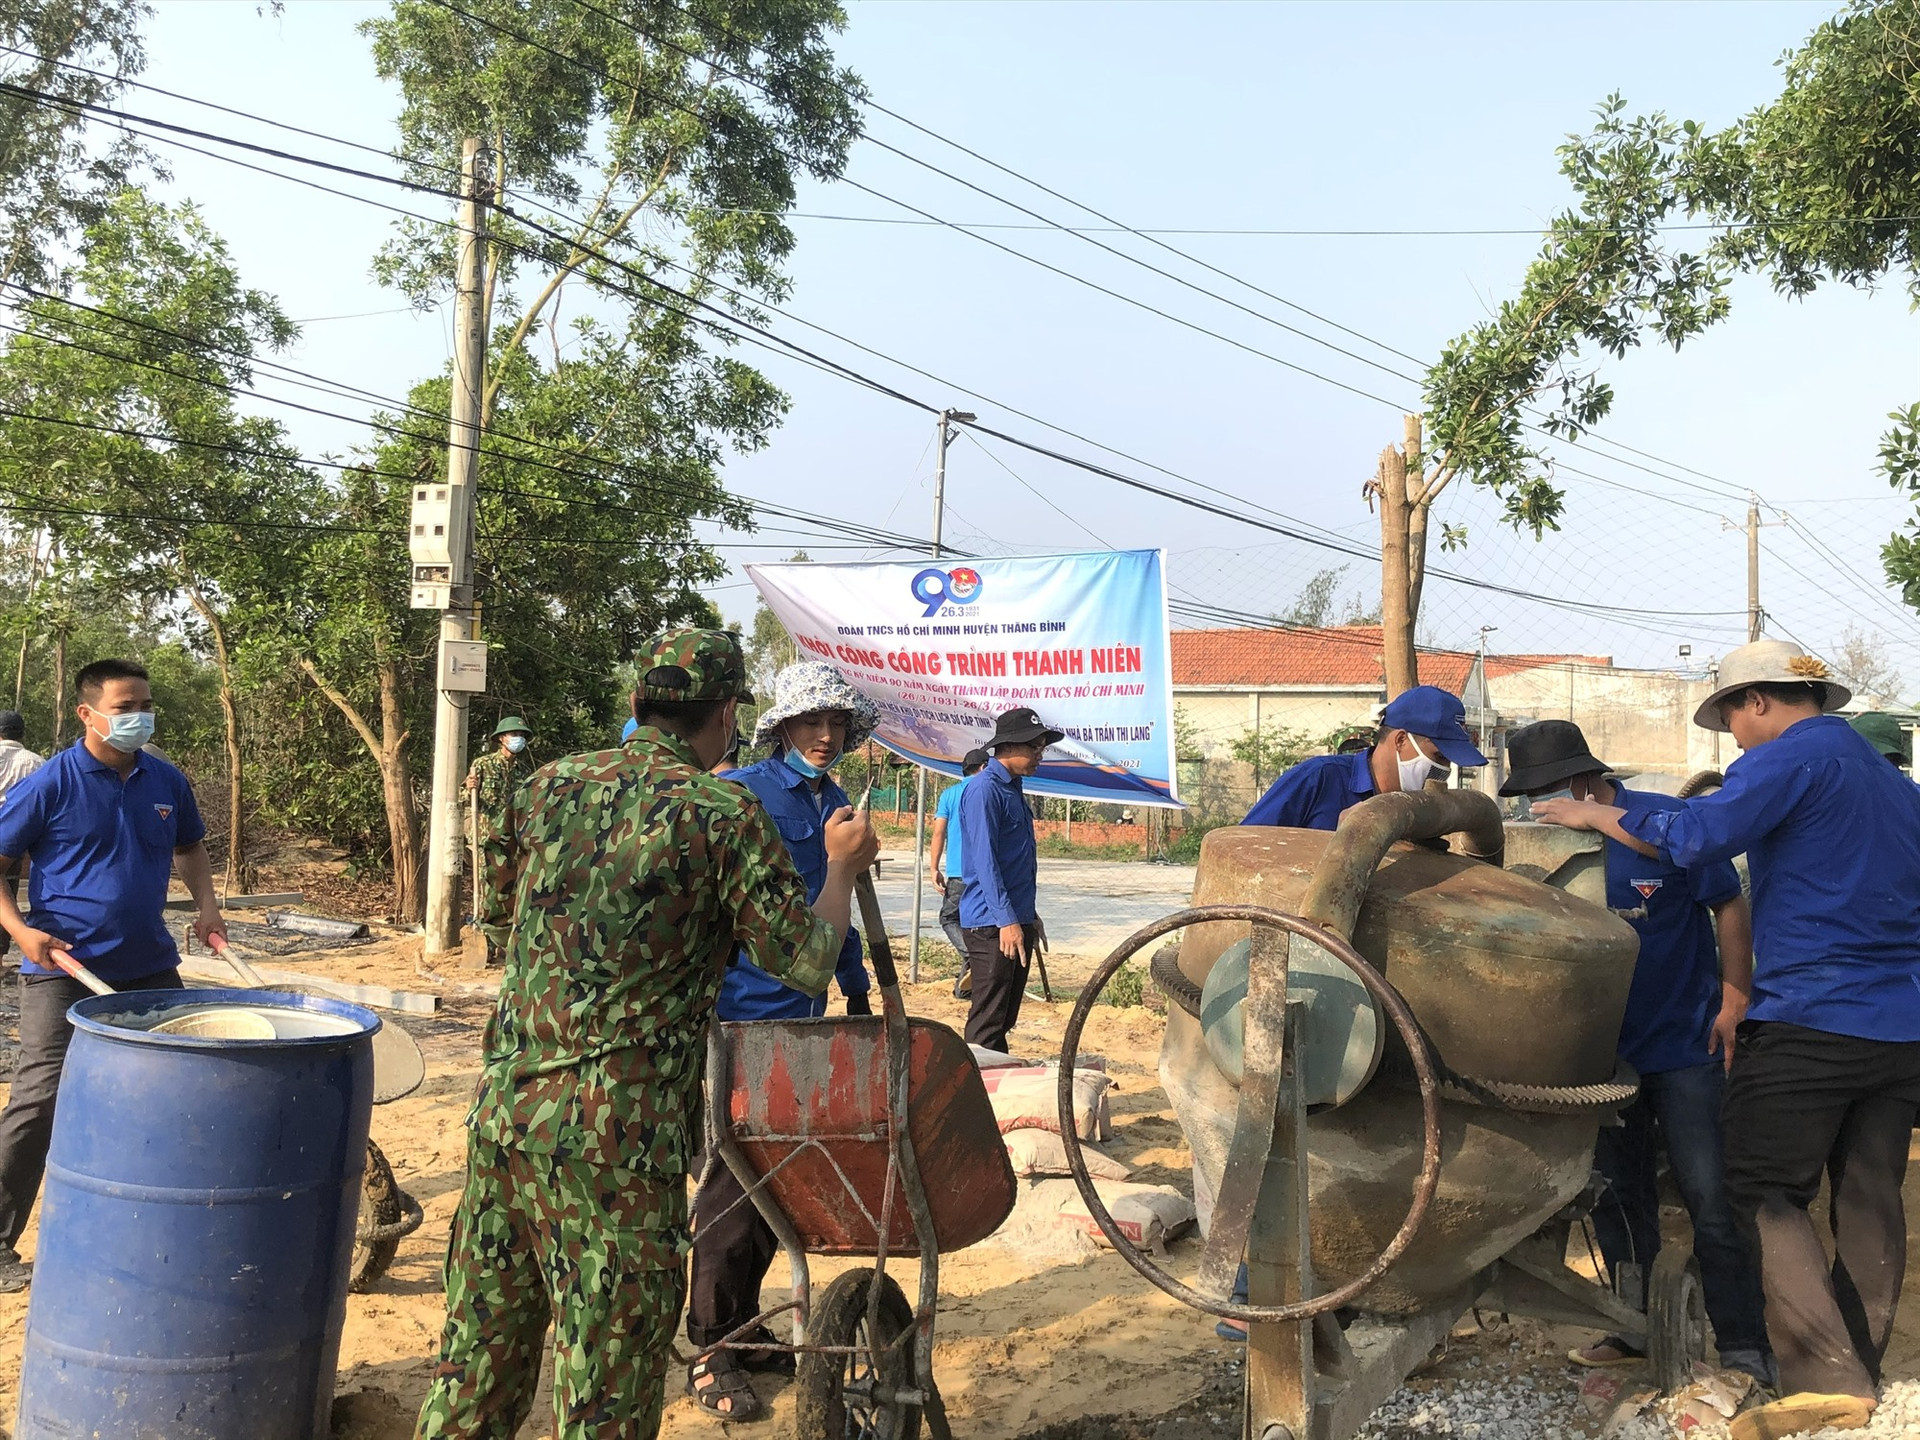 Đoàn viên thanh niên huyện Thăng Bình thi công bê tông sân nền khu di tích lịch sử cấp tỉnh. Ảnh: Thu Sương